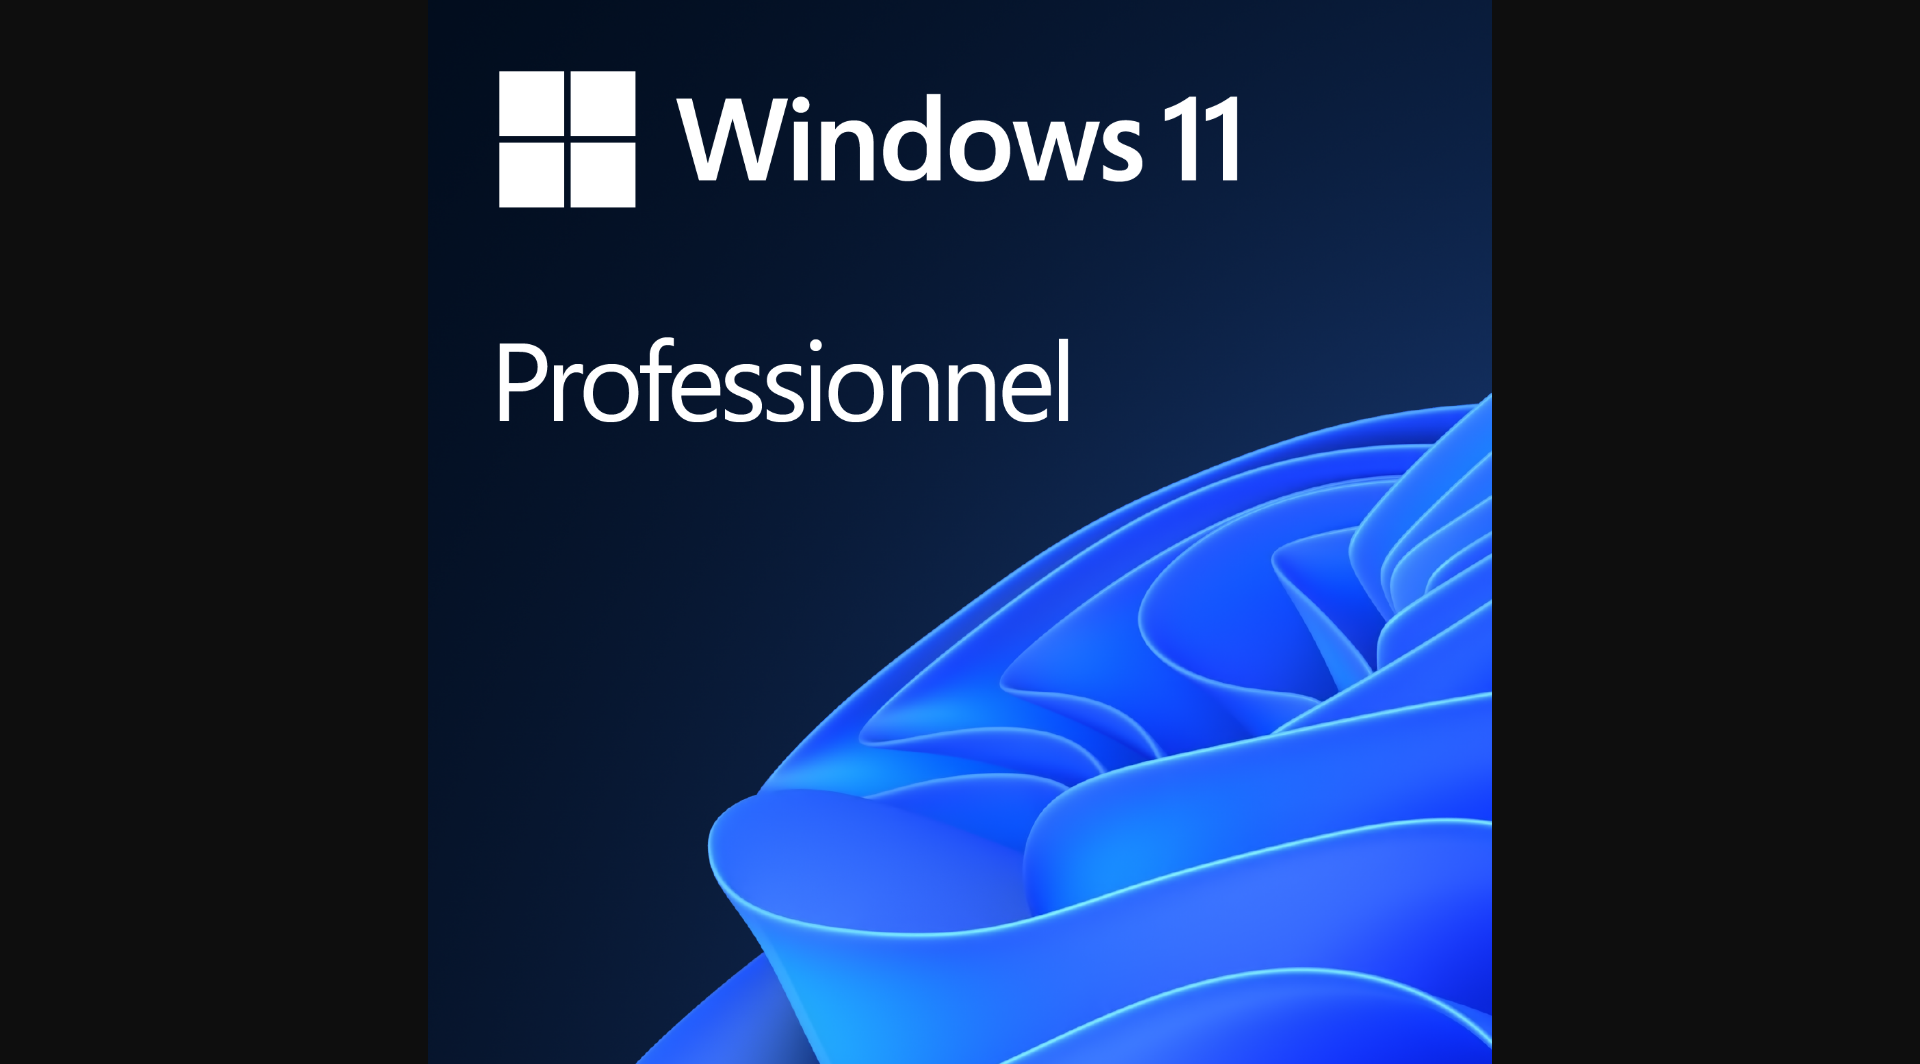 Licence Windows 11 Pro Autocollants - Pour L'activation De Windows